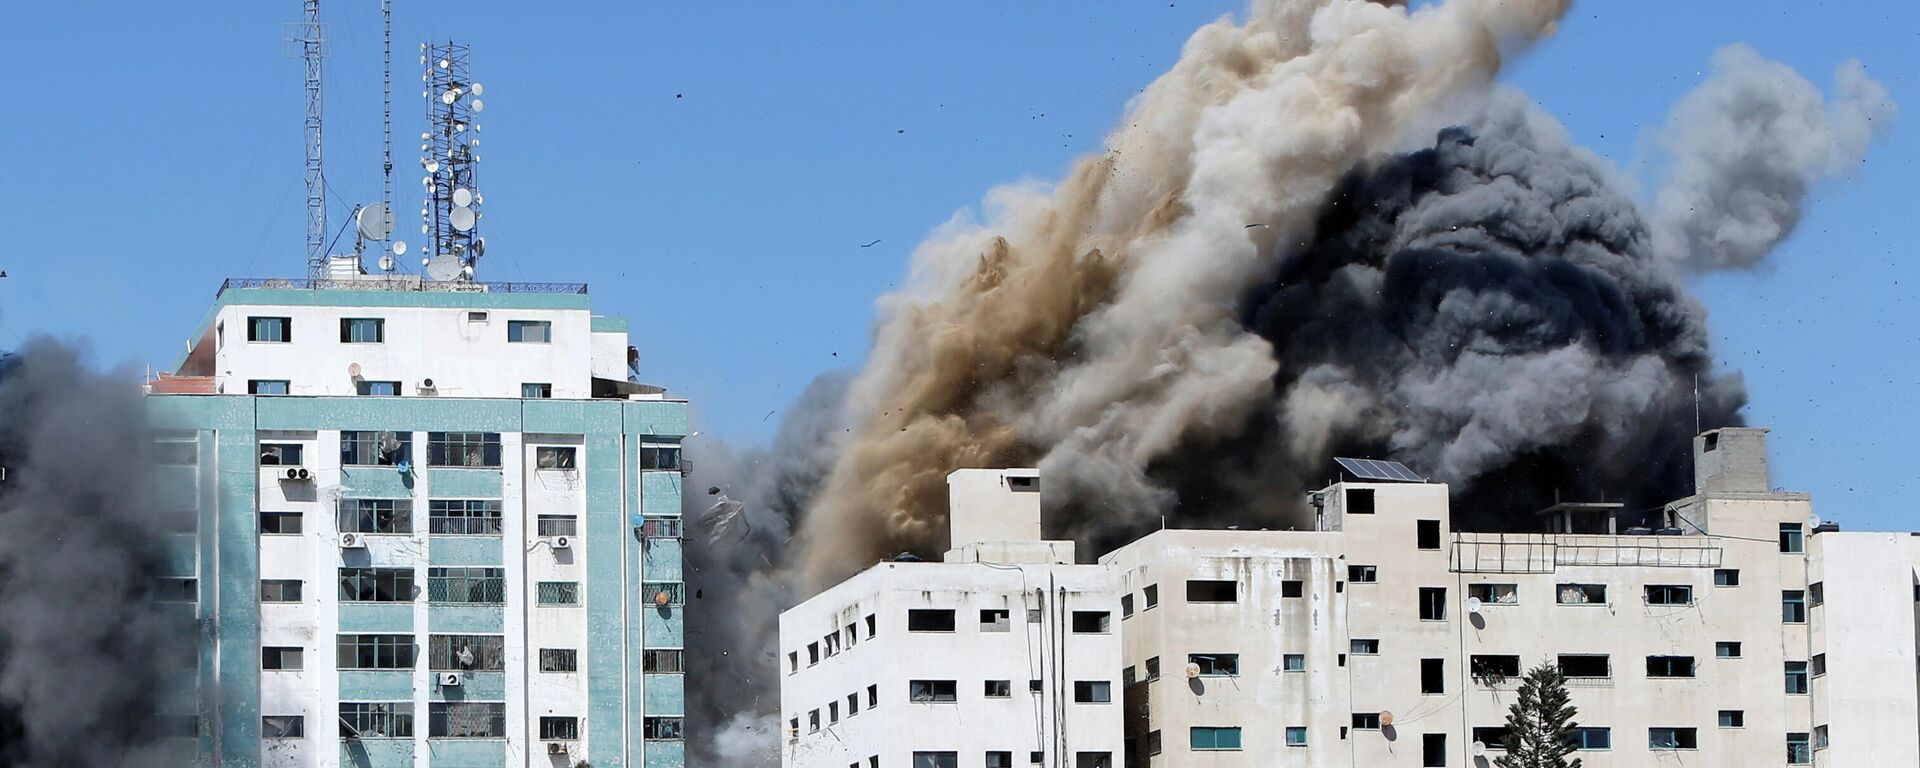 Las oficinas de AP y Al Jazeera se derrumban tras los ataques de misiles israelíes en la ciudad de Gaza, el 15 de mayo de 2021 - Sputnik Mundo, 1920, 16.05.2021